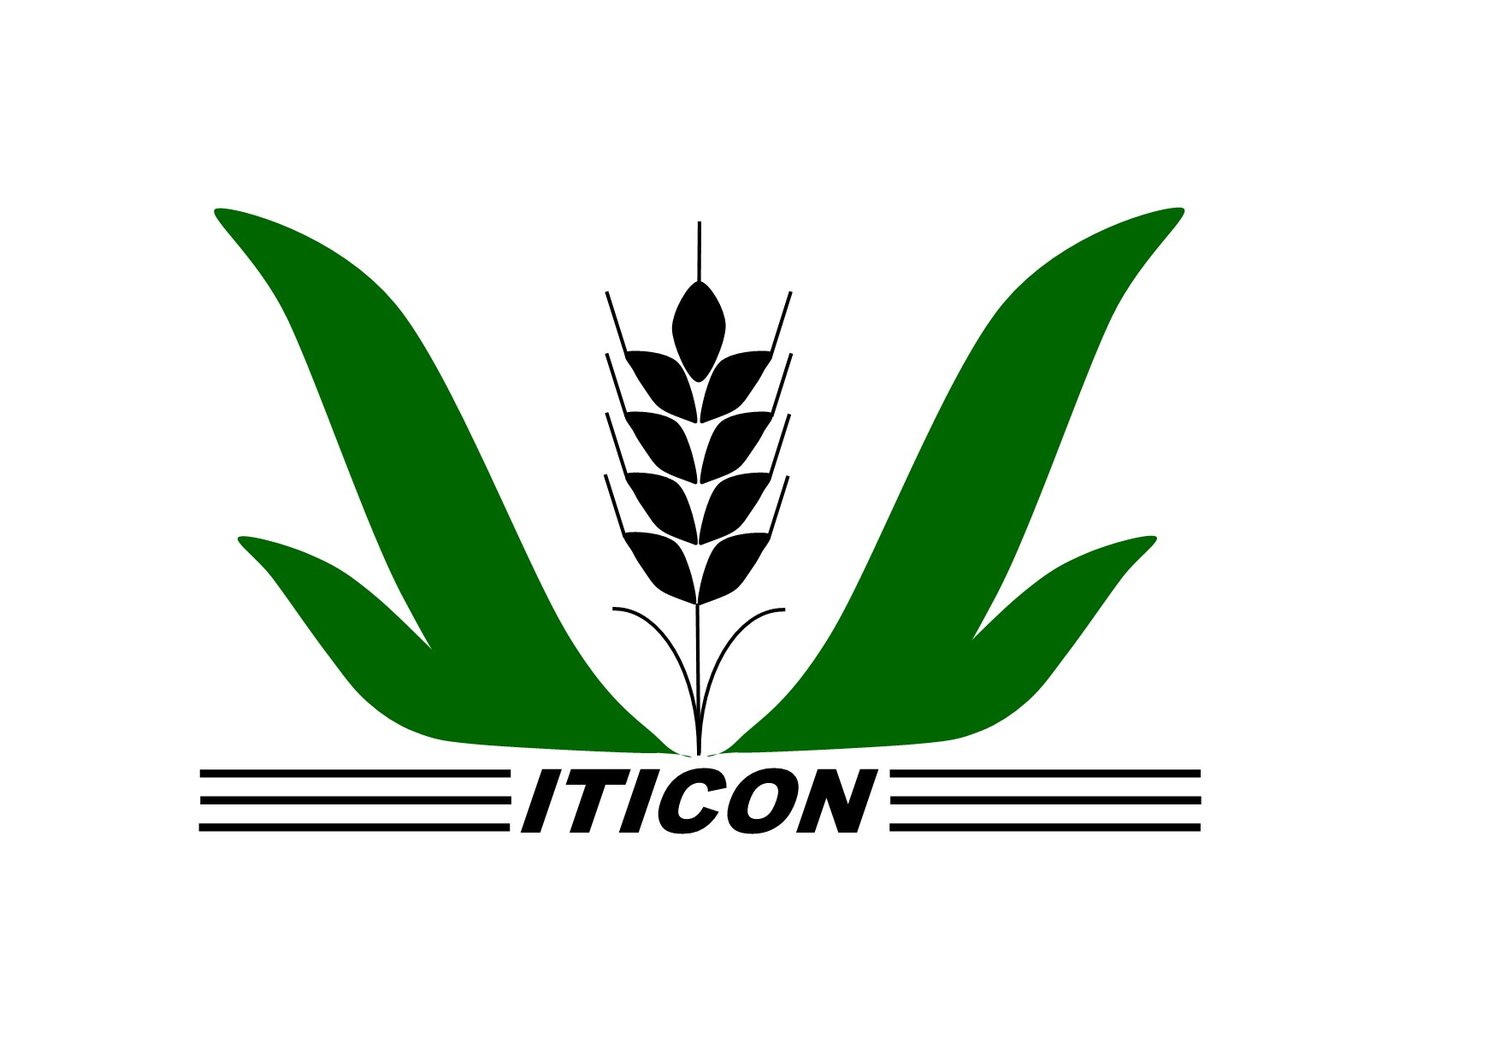 ITICON